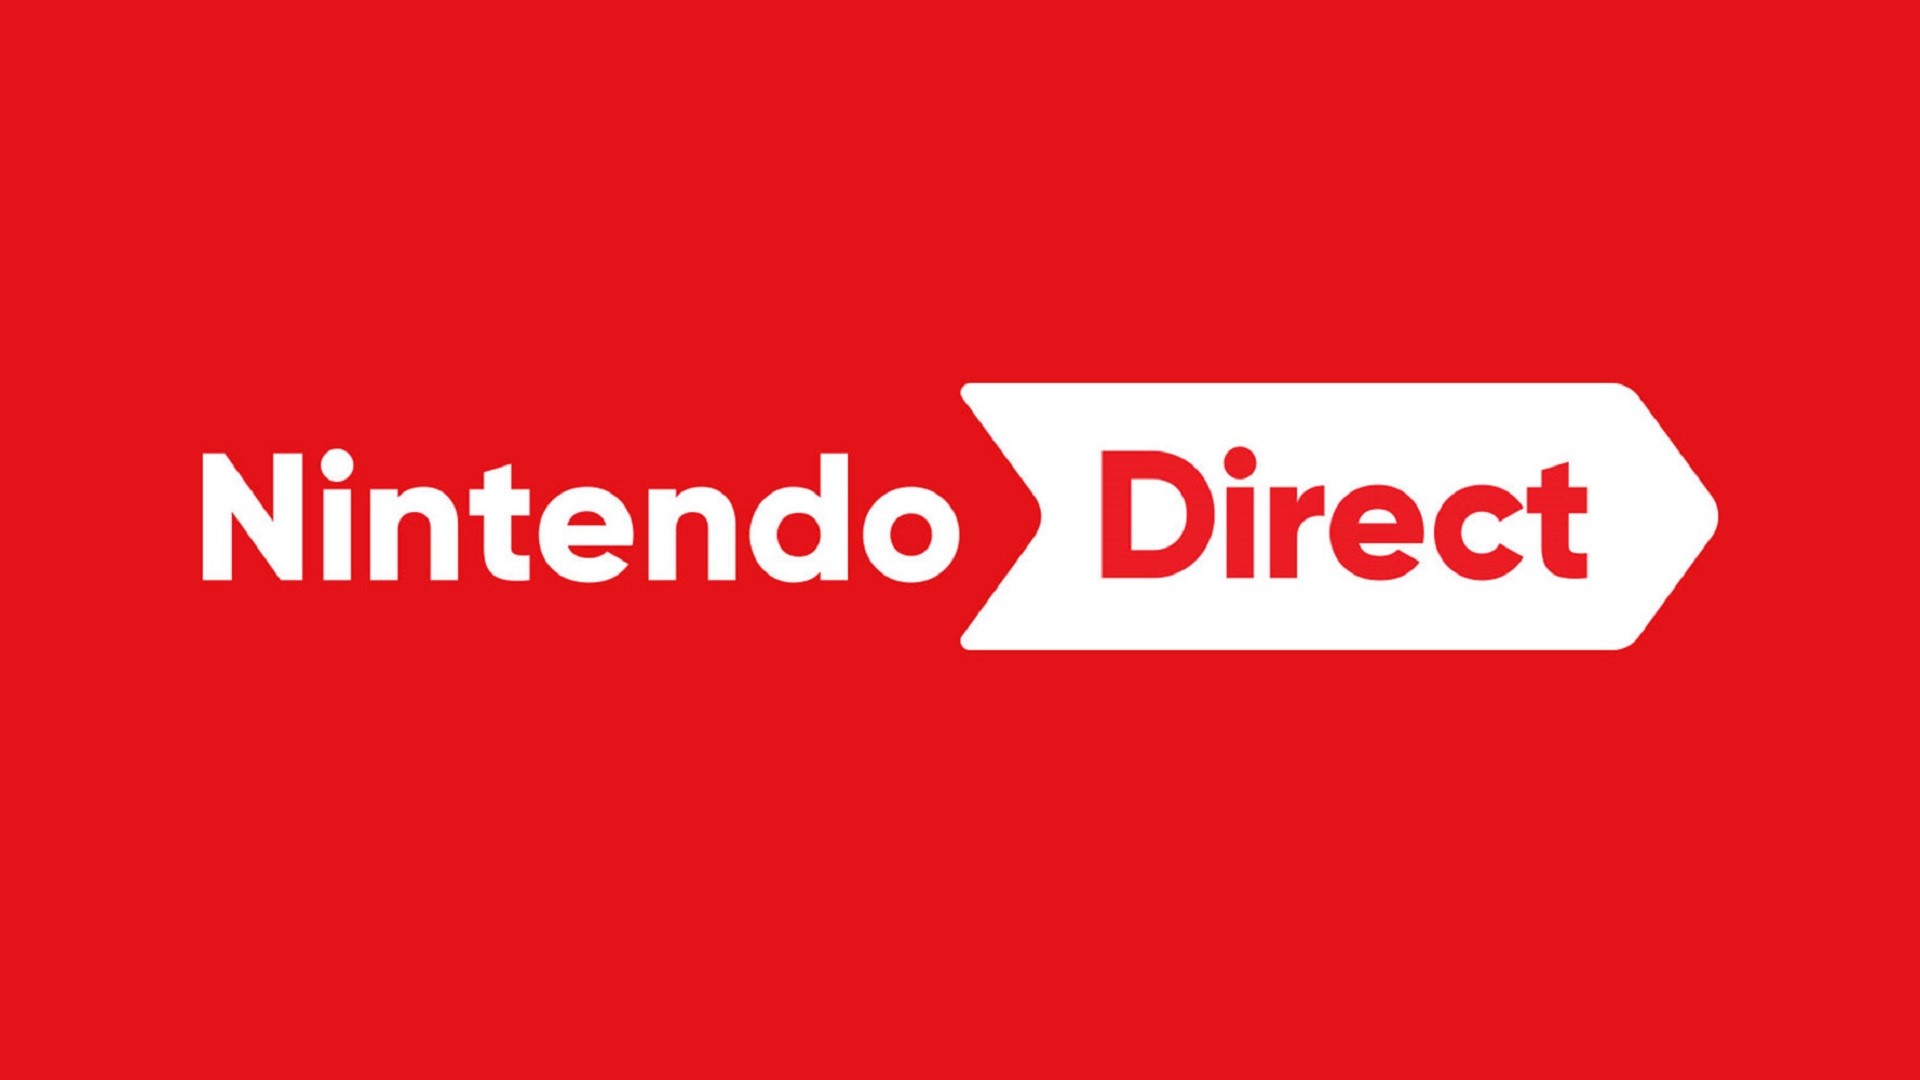 Bekijk hier de Nintendo Direct van 17 februari terug en lees de aankondigingen